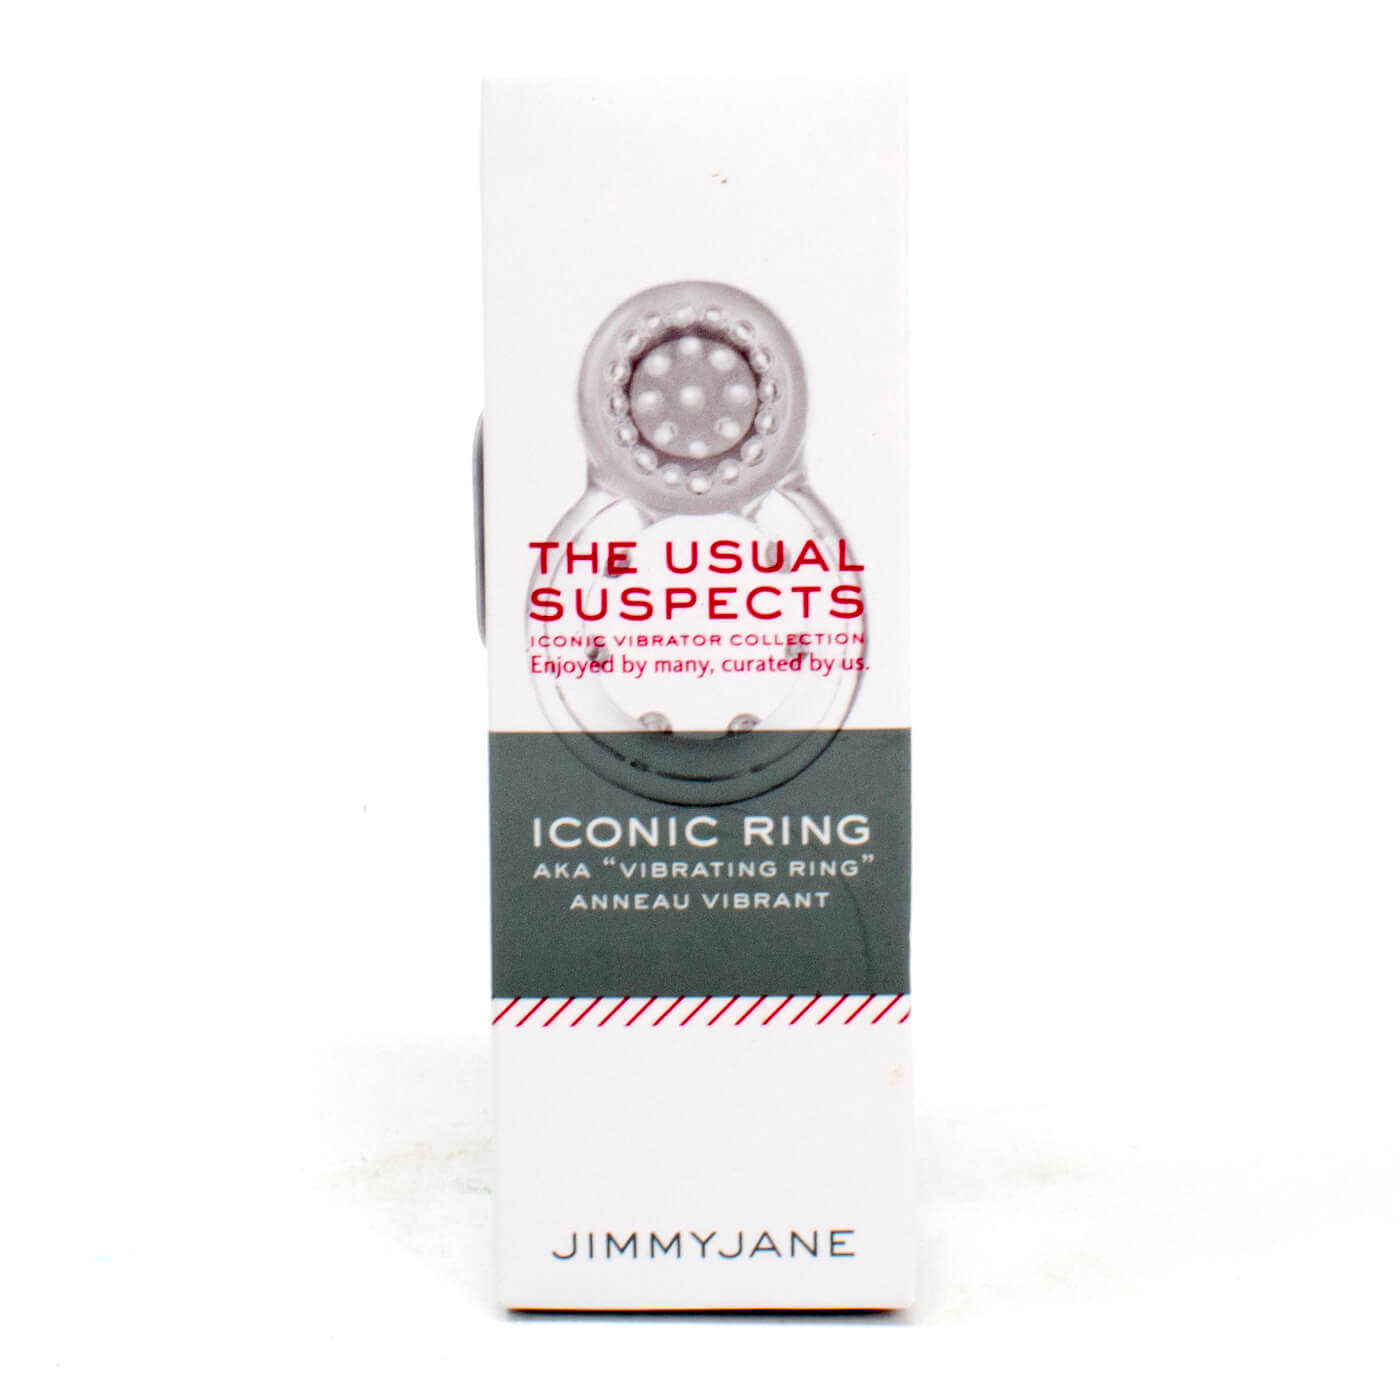 Jimmy Jane Iconic Ring